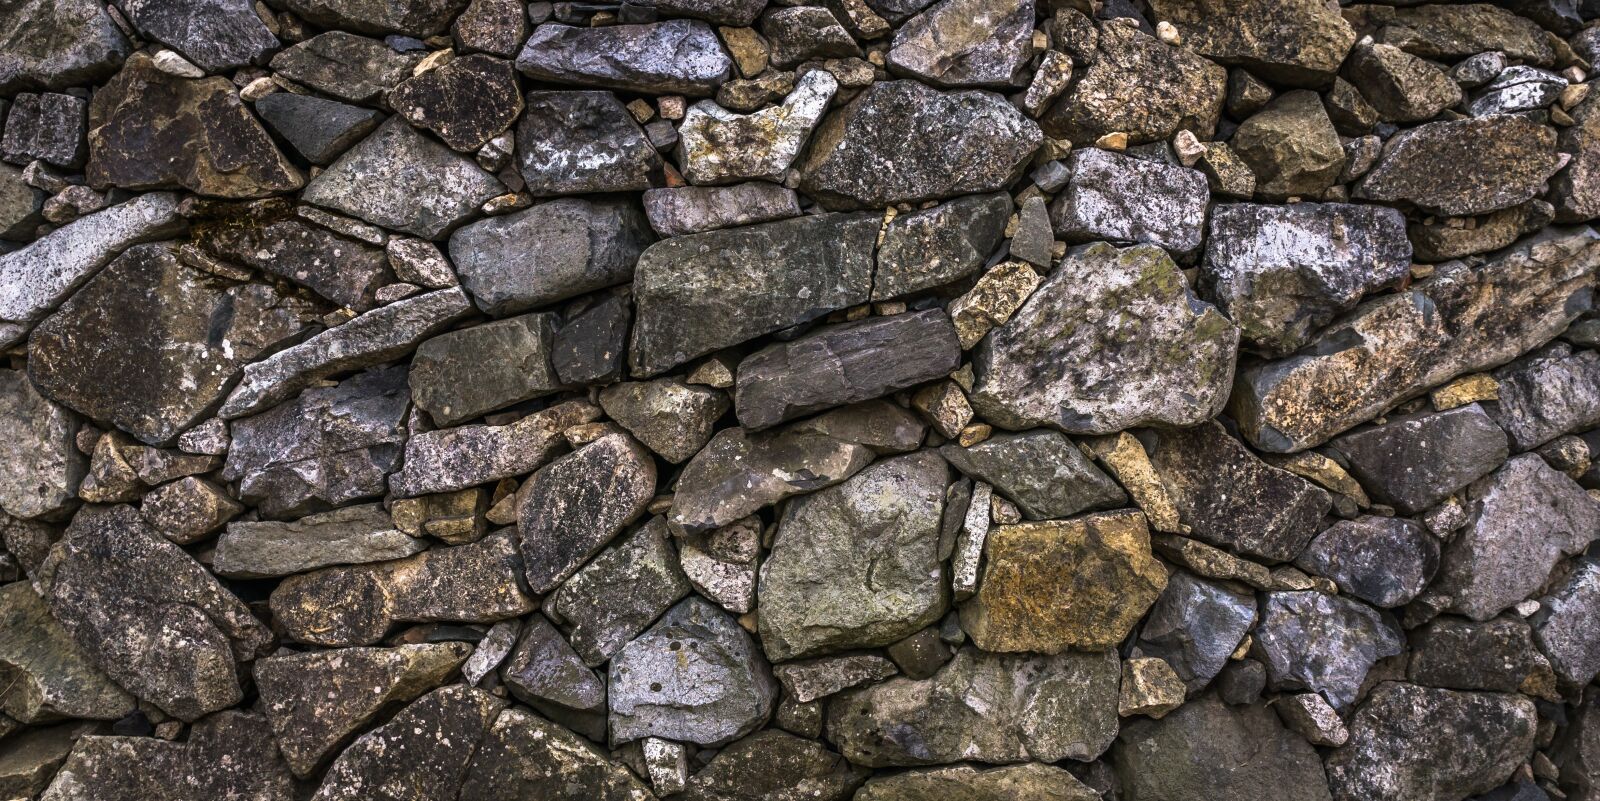 Sony Alpha NEX-5N + Sony E 30mm F3.5 Macro sample photo. Stone, stone wall, texture photography